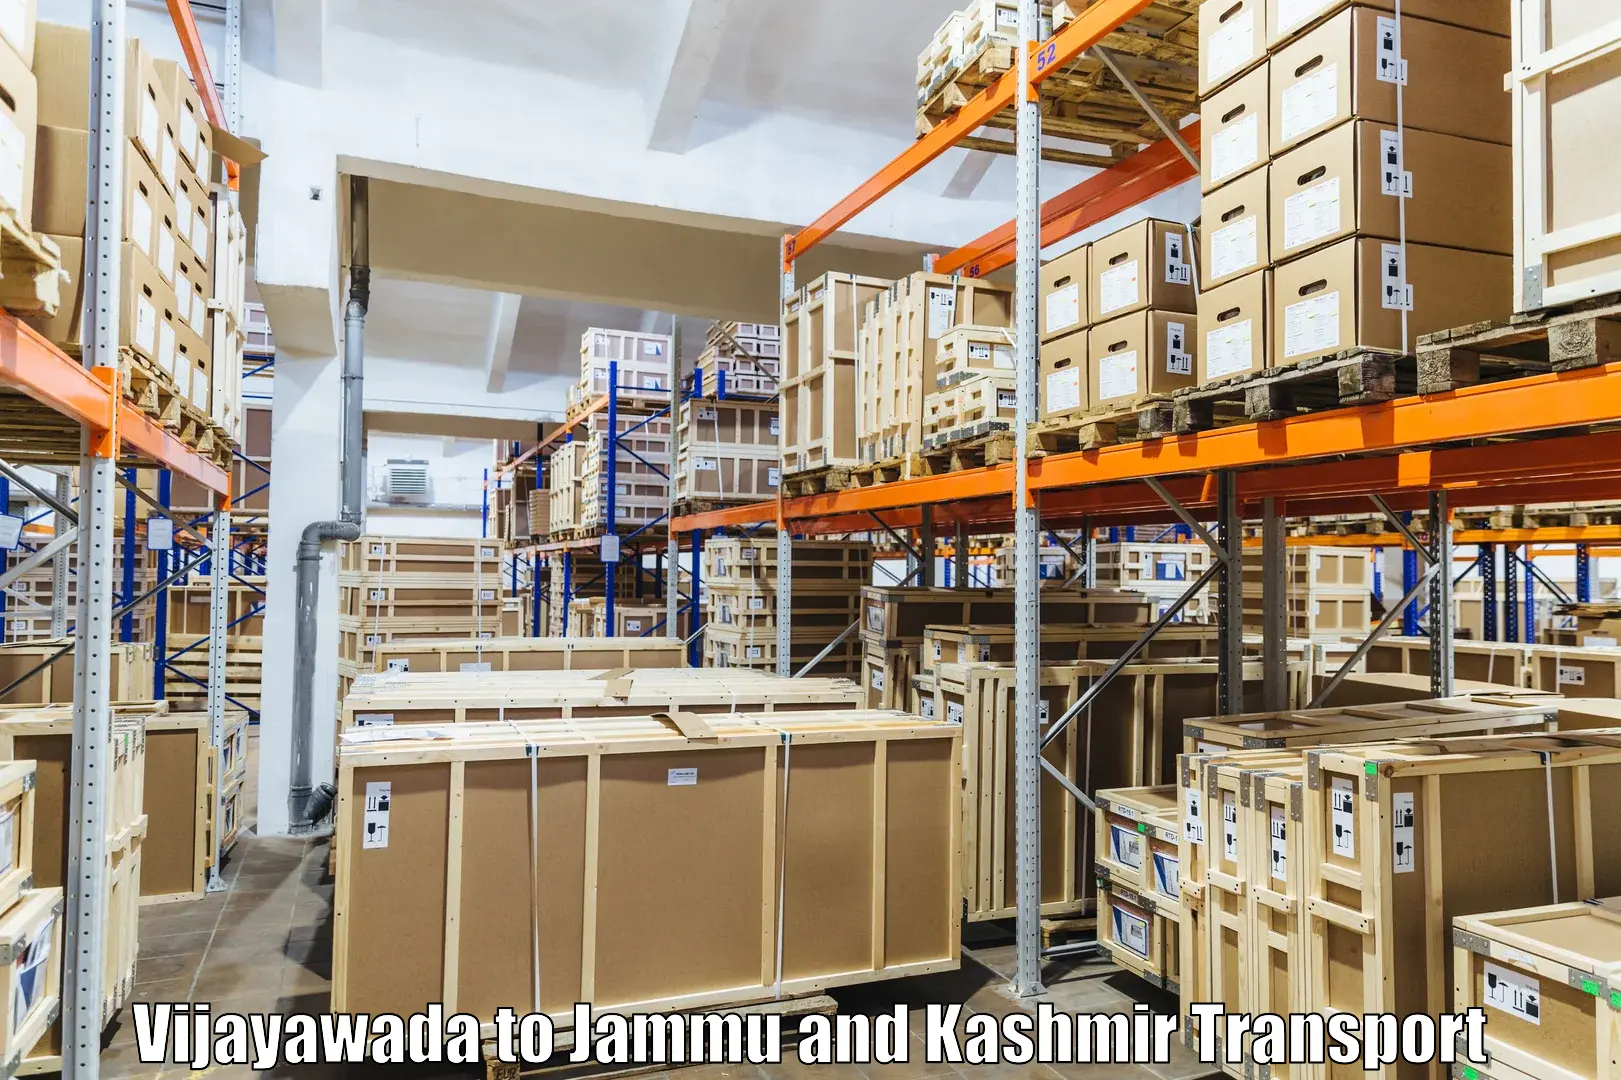 Shipping partner Vijayawada to Jammu and Kashmir